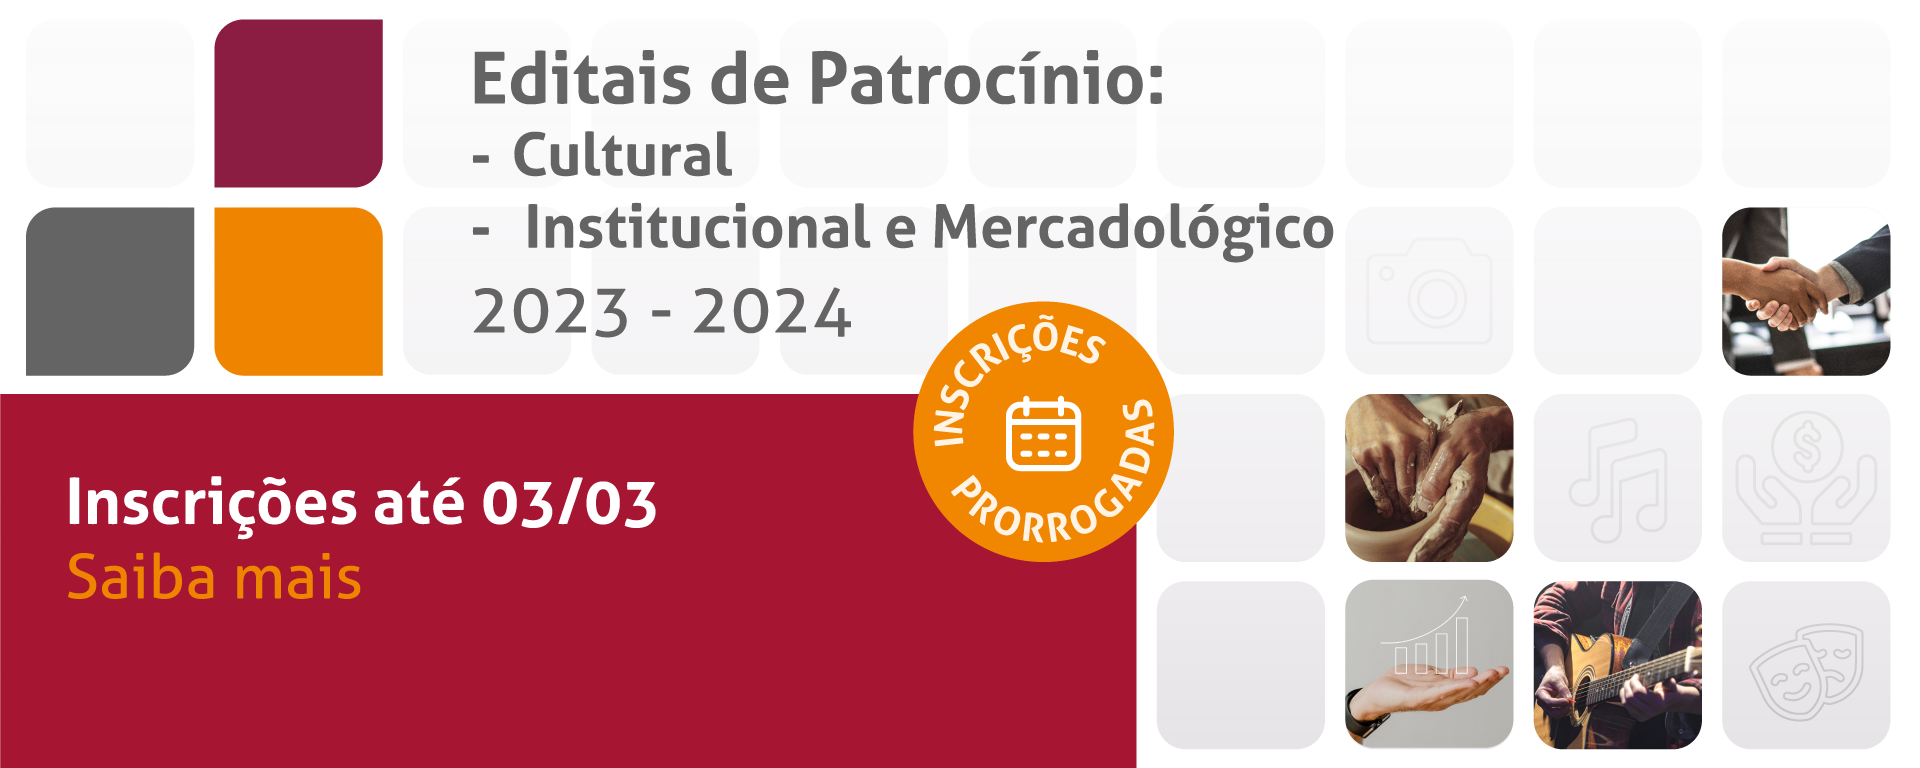 Editais de Patrocínio: Cultura e Institucional e mercadológico 2023-2024.
Inscrições até 03/03. Saiba mais.